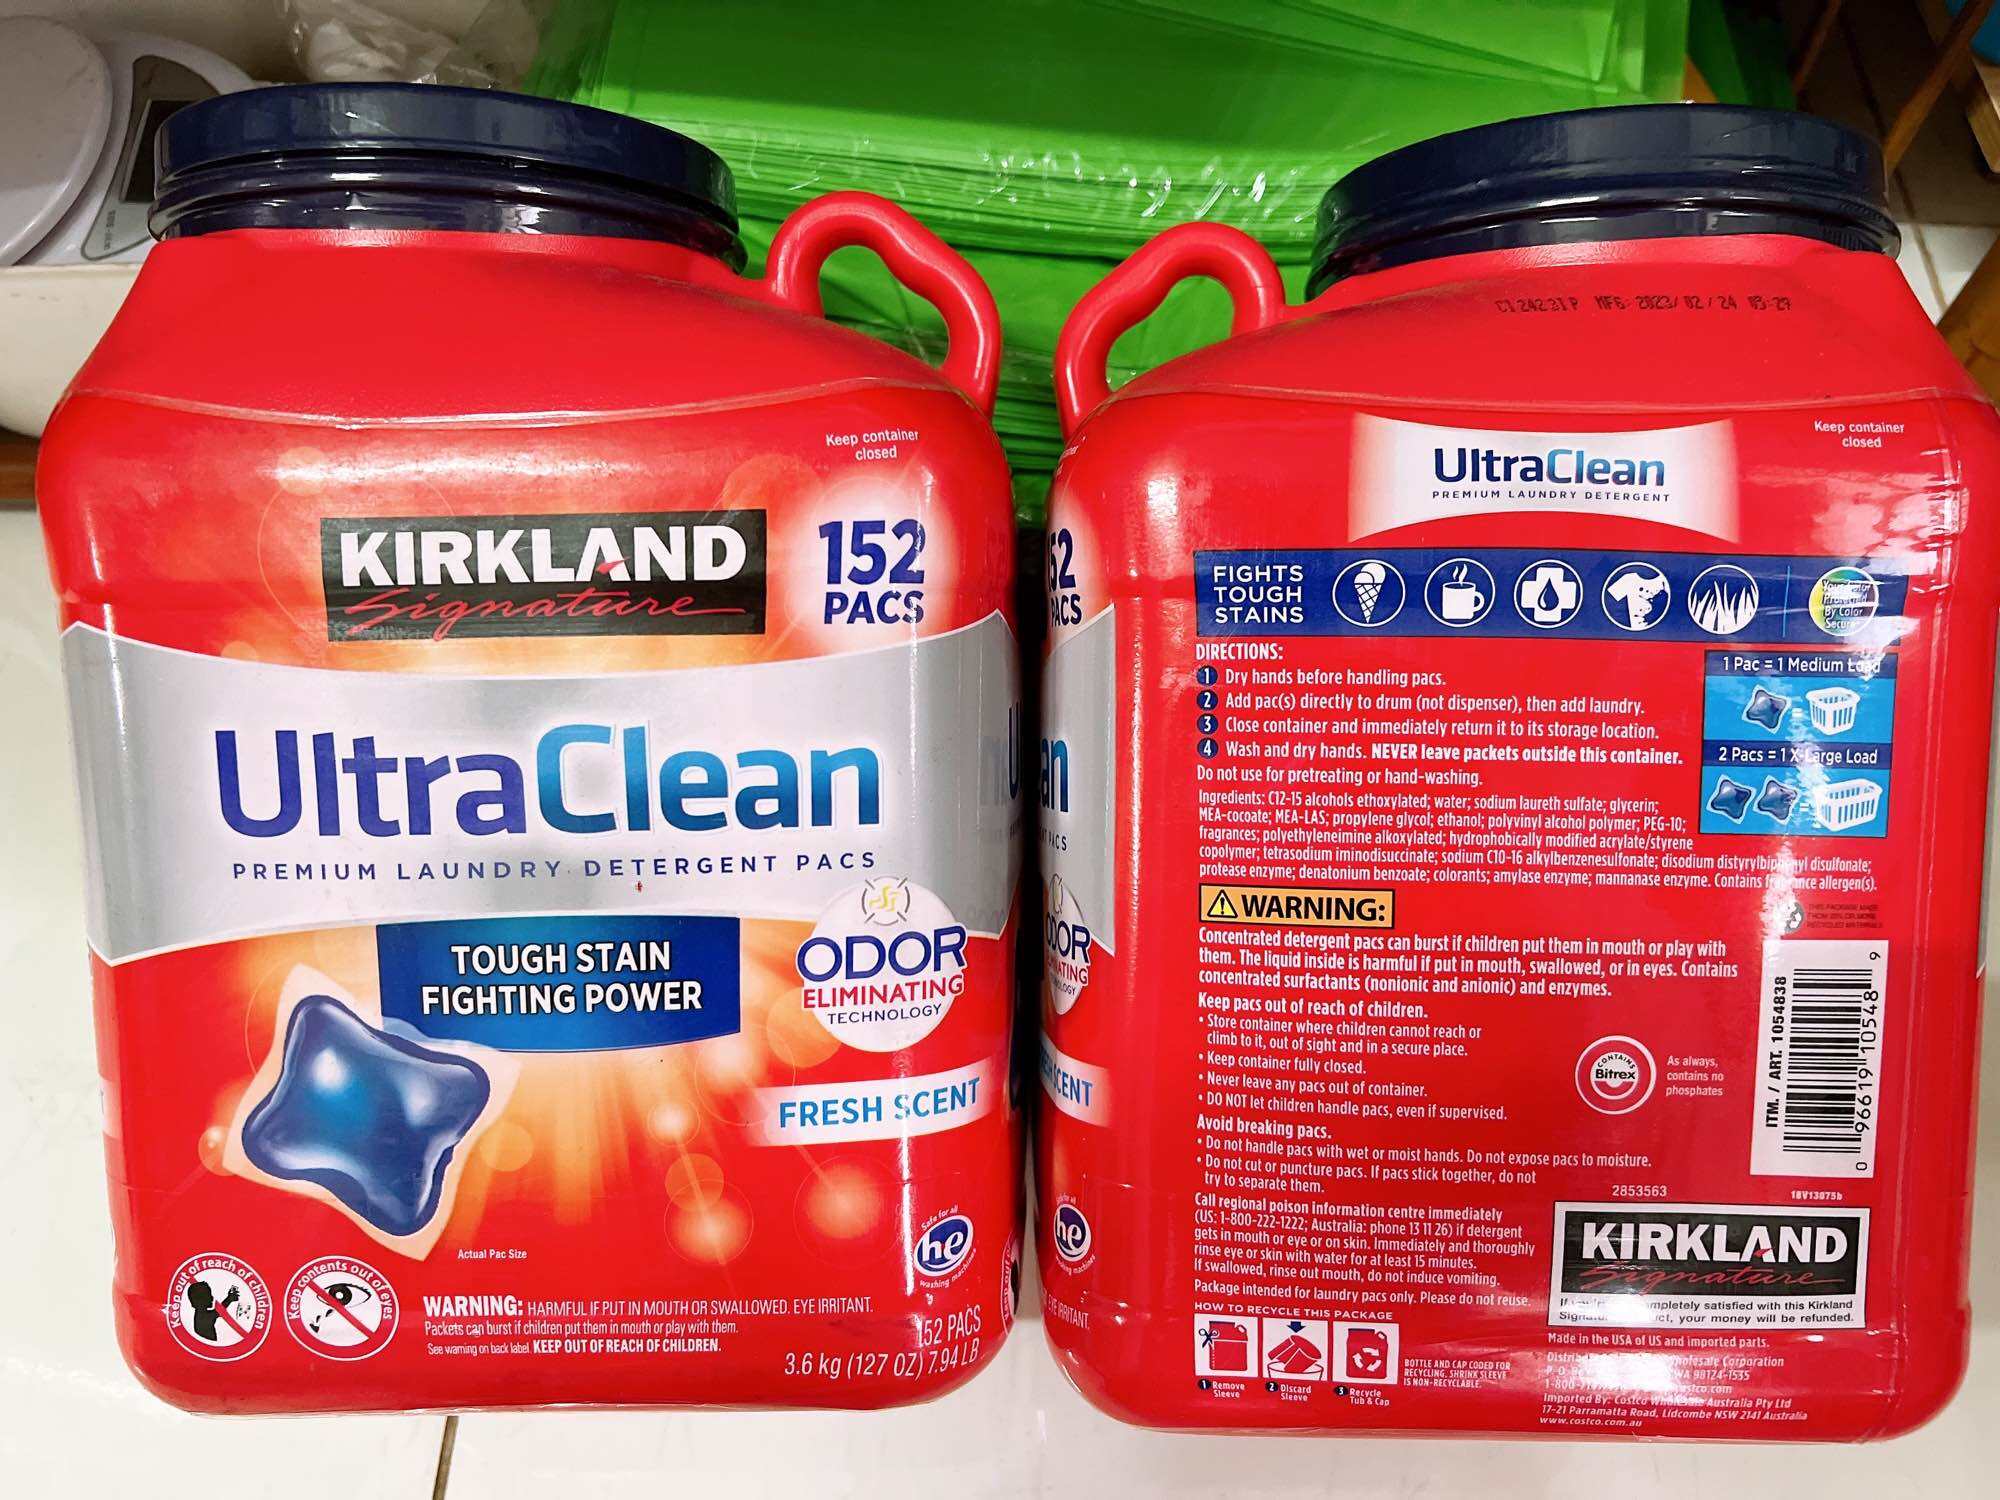 Viên giặt Kirkland Signature Ultra Clean 152 viên của Mỹ.